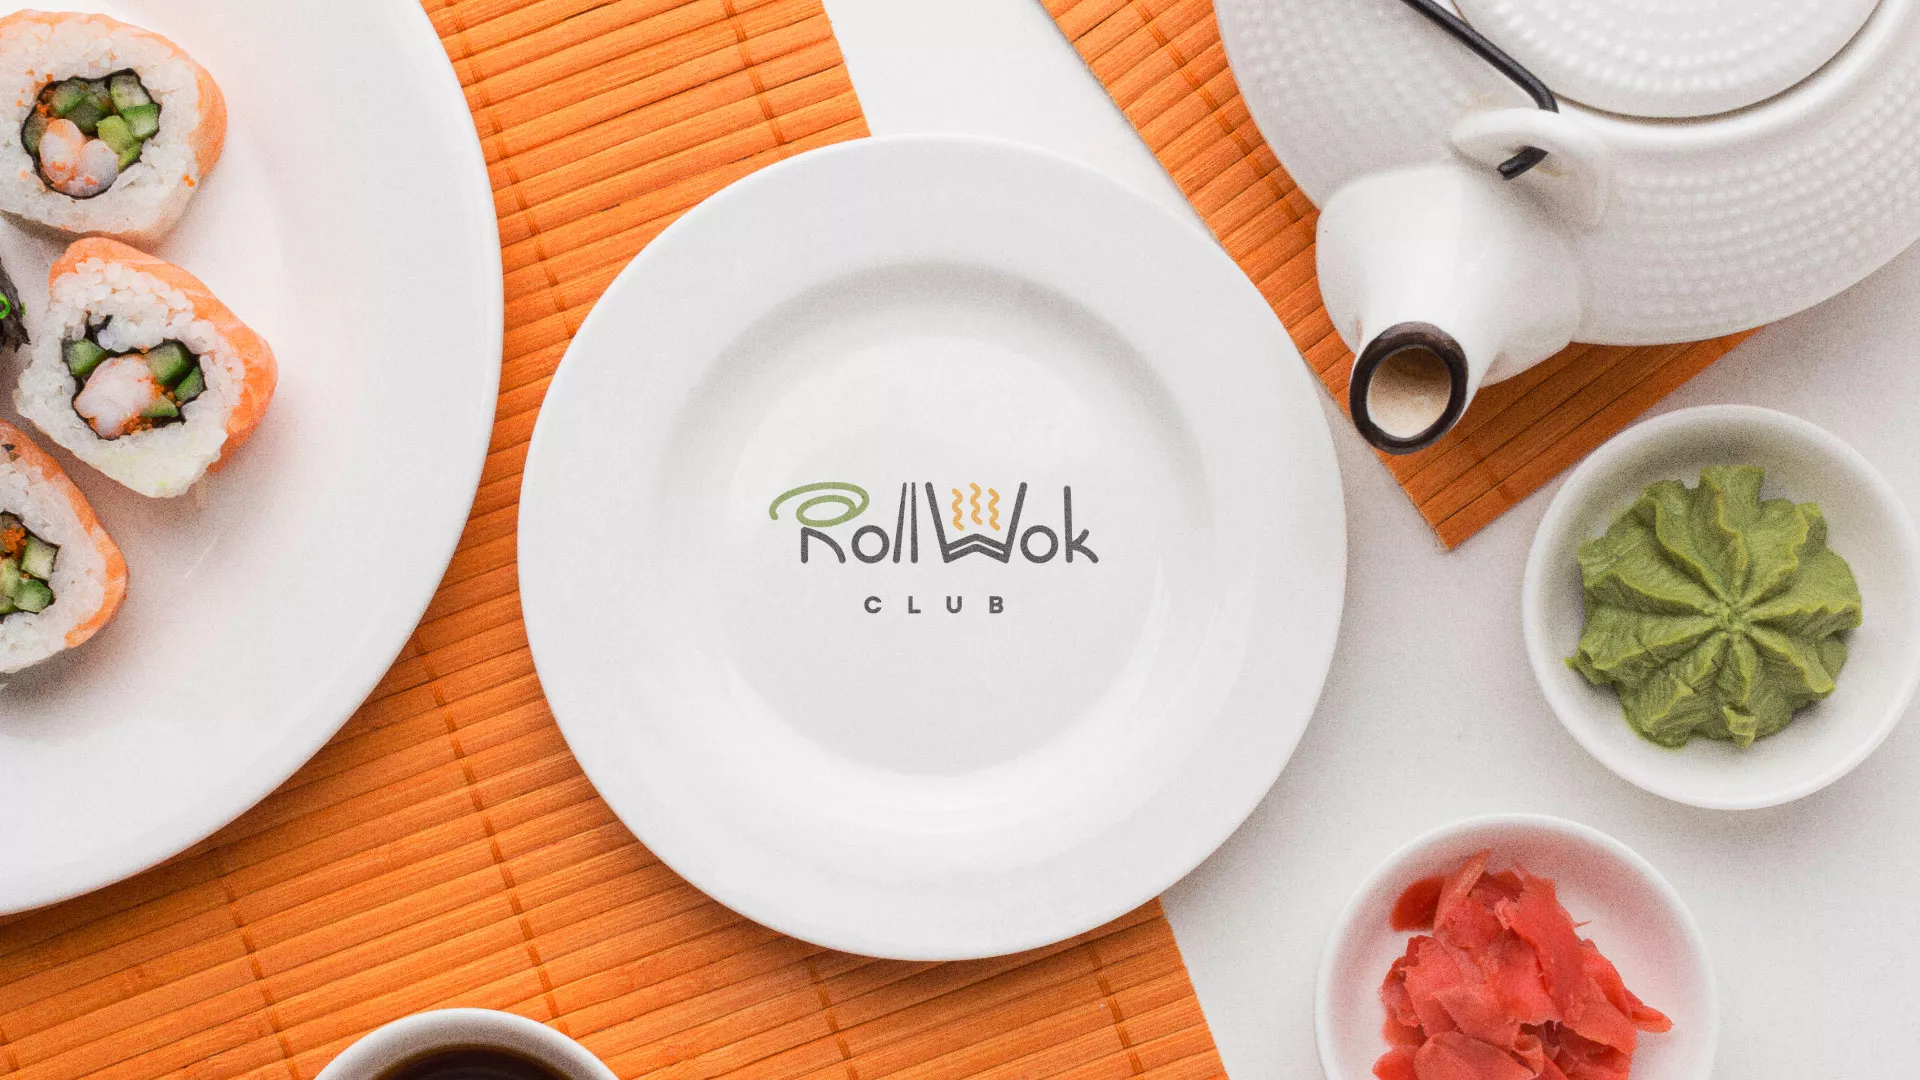 Разработка логотипа и фирменного стиля суши-бара «Roll Wok Club» в Астрахани